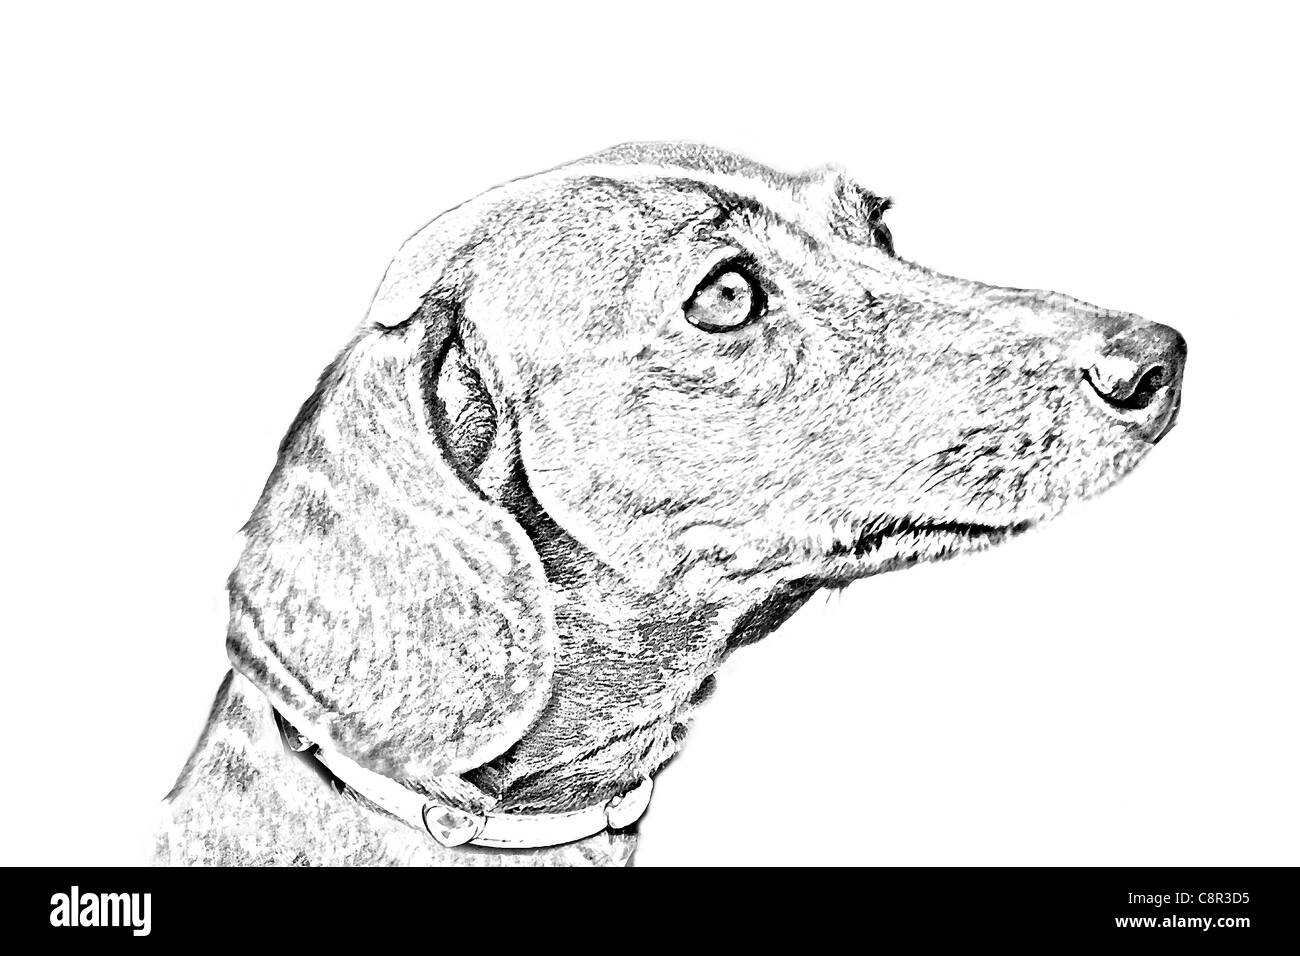 Stile di disegno ritratto di un bassotto o cane di Wiener Foto Stock